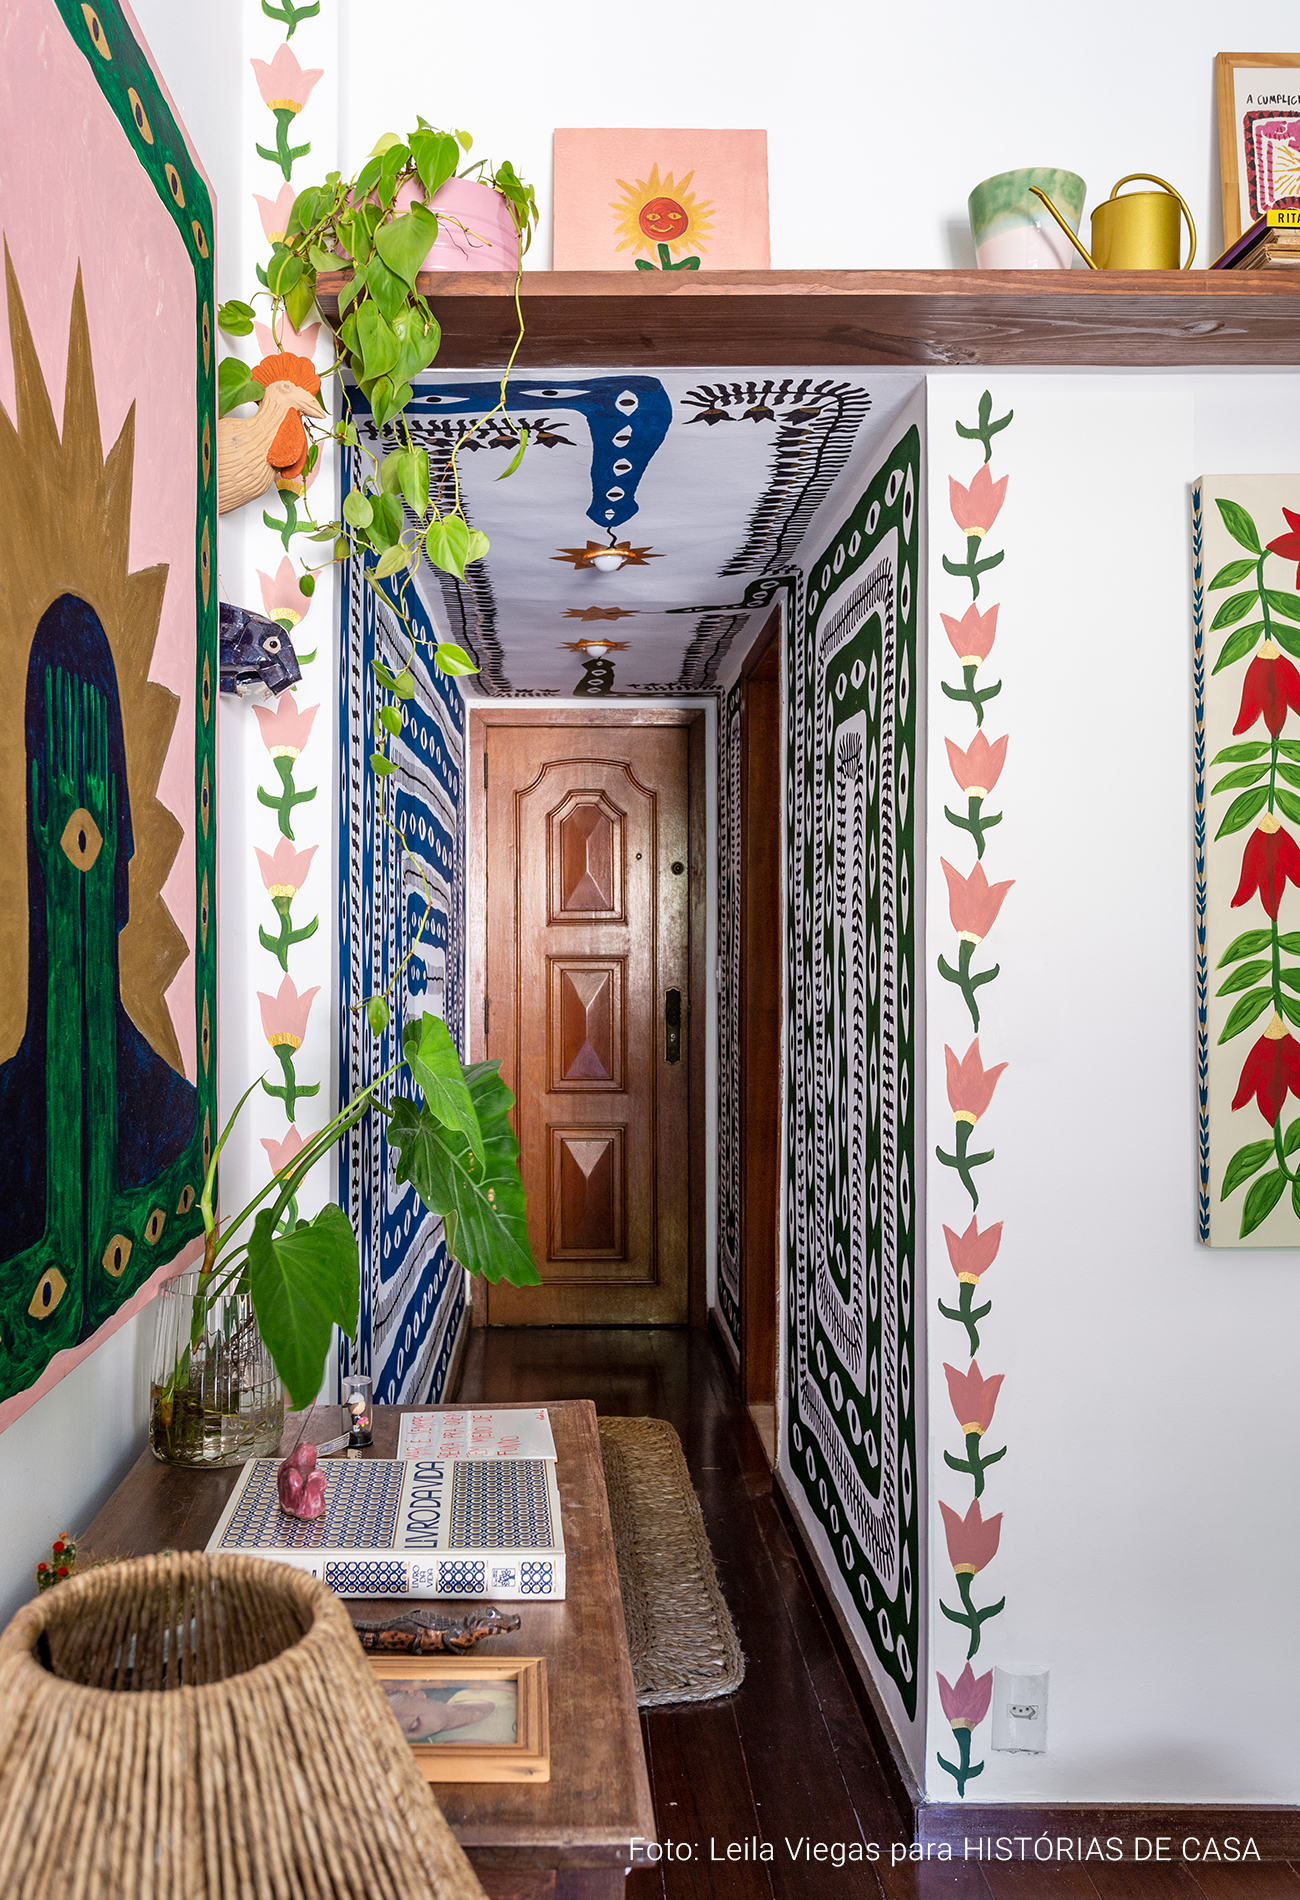 Apartamento do artista João Incerti, com decoração colorida e paredes repletas de pinturas e arte.